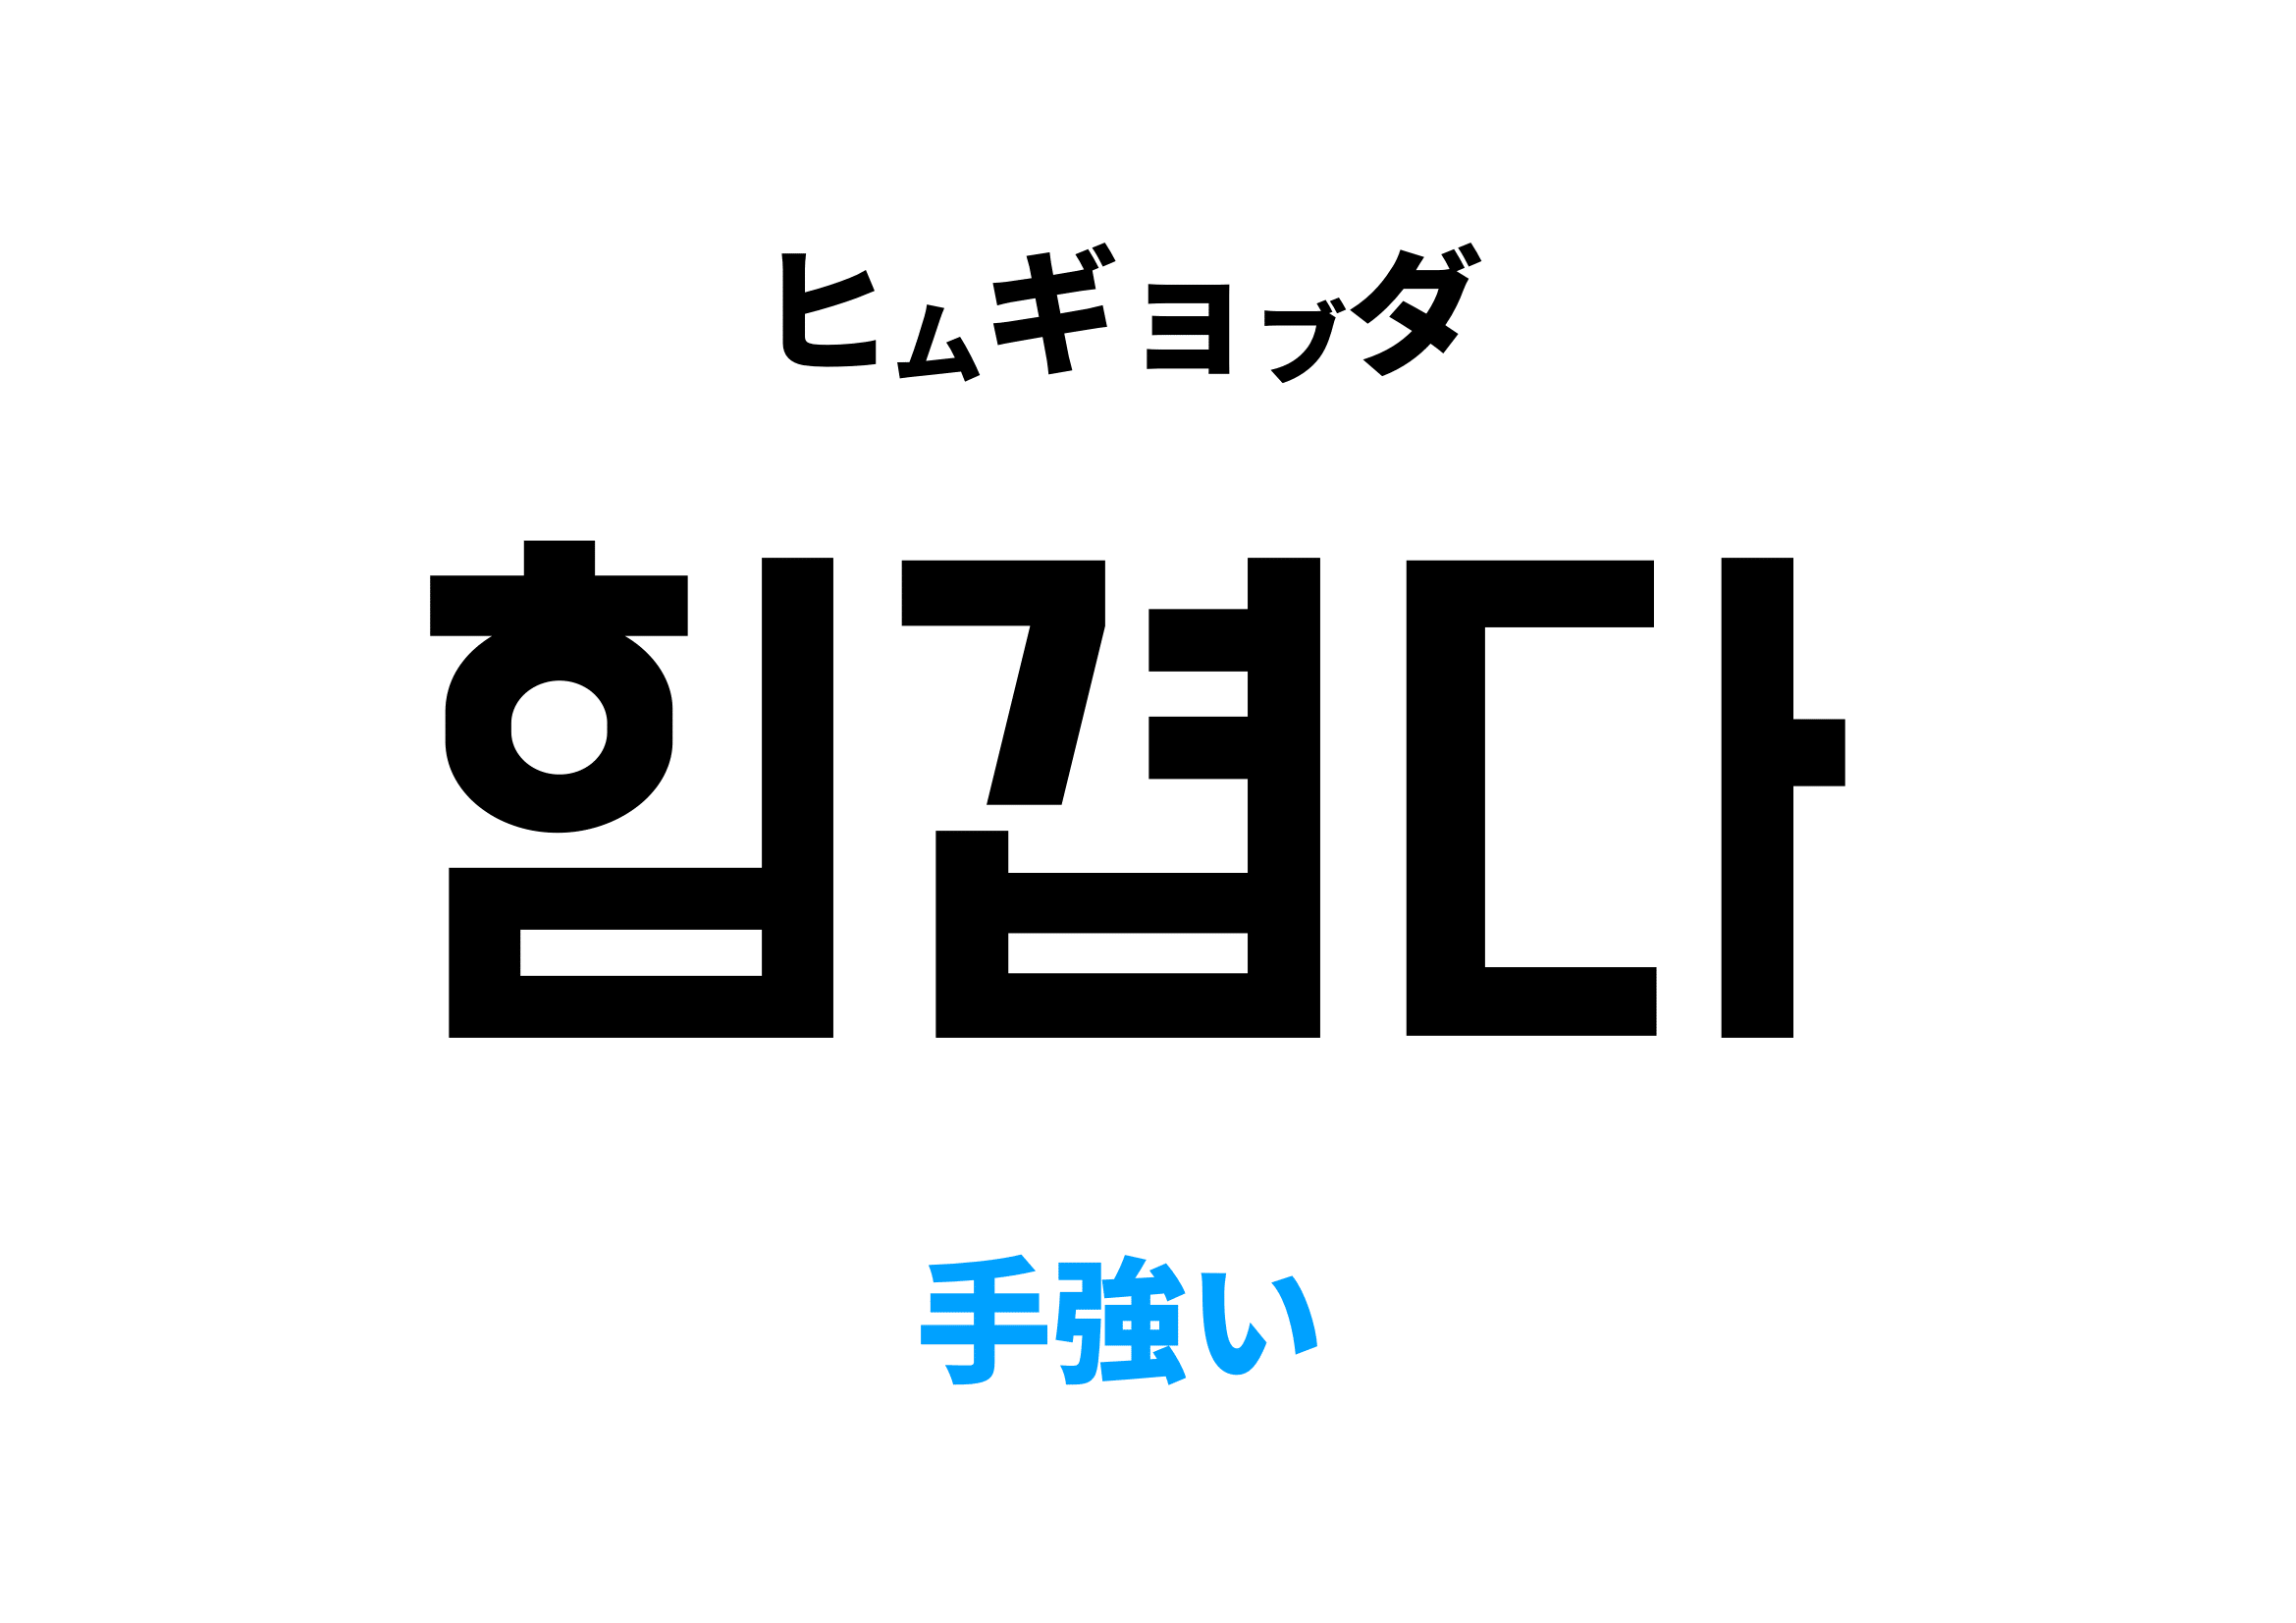 韓国語で手強い,힘겹다の意味